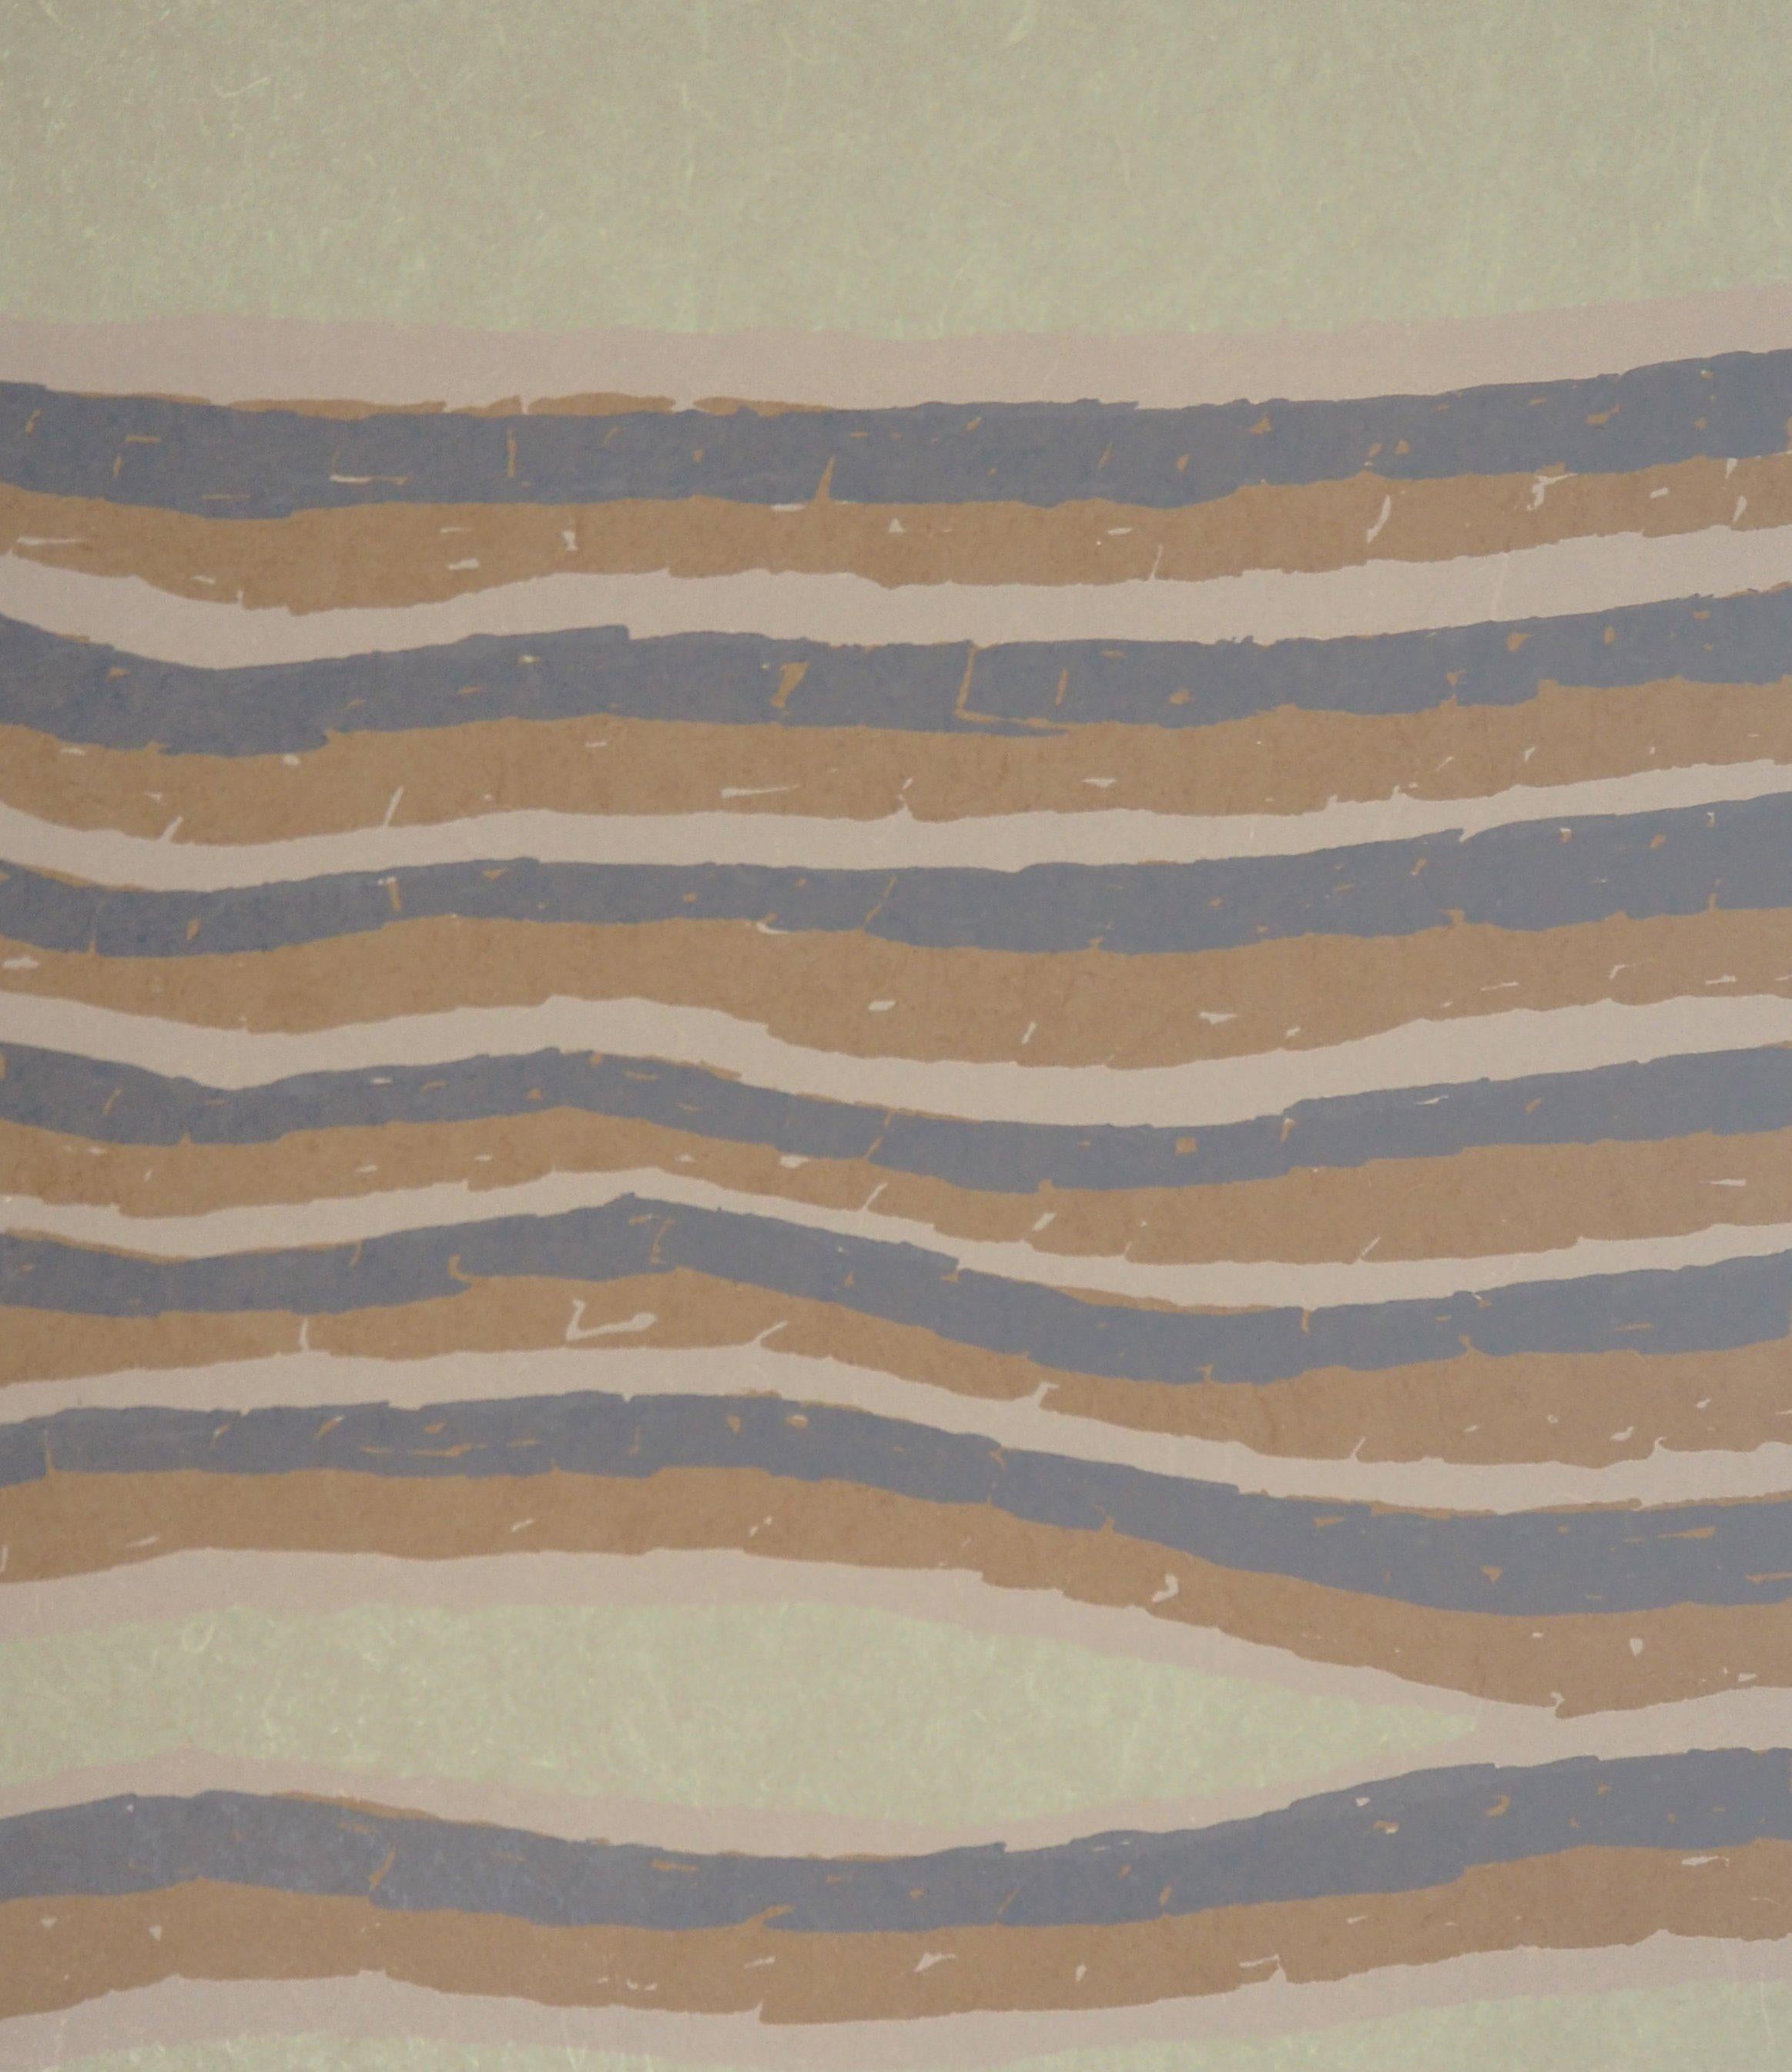 Dessous de sable surréaliste - Lithographie originale signée à la main - Gris Landscape Print par Raoul Ubac